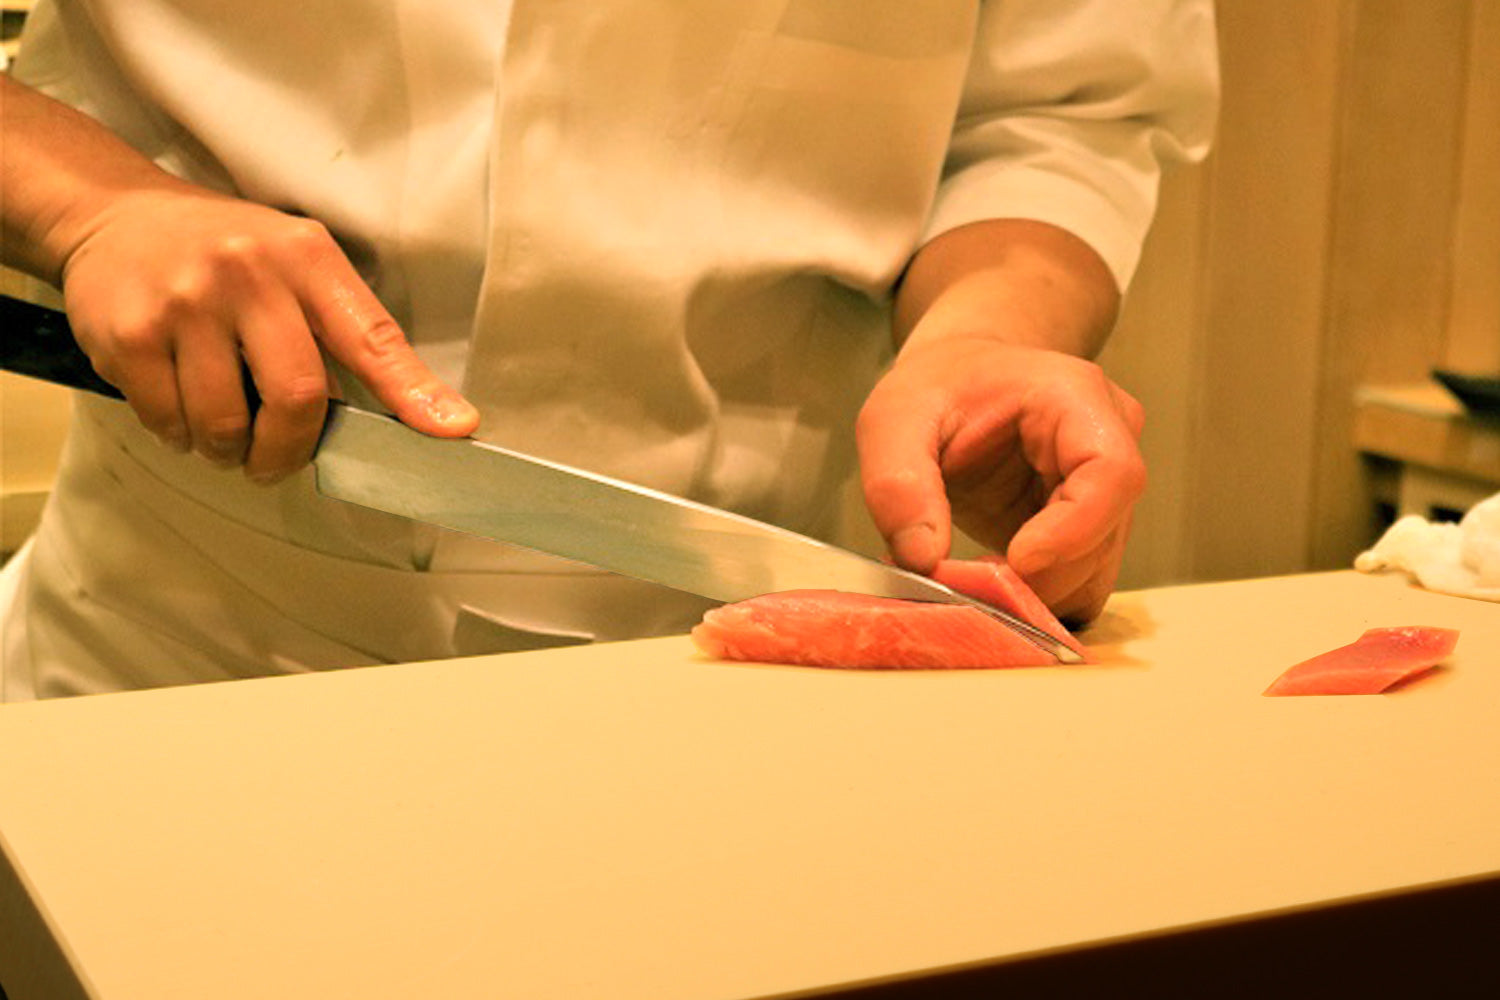 Chef Cutting Board